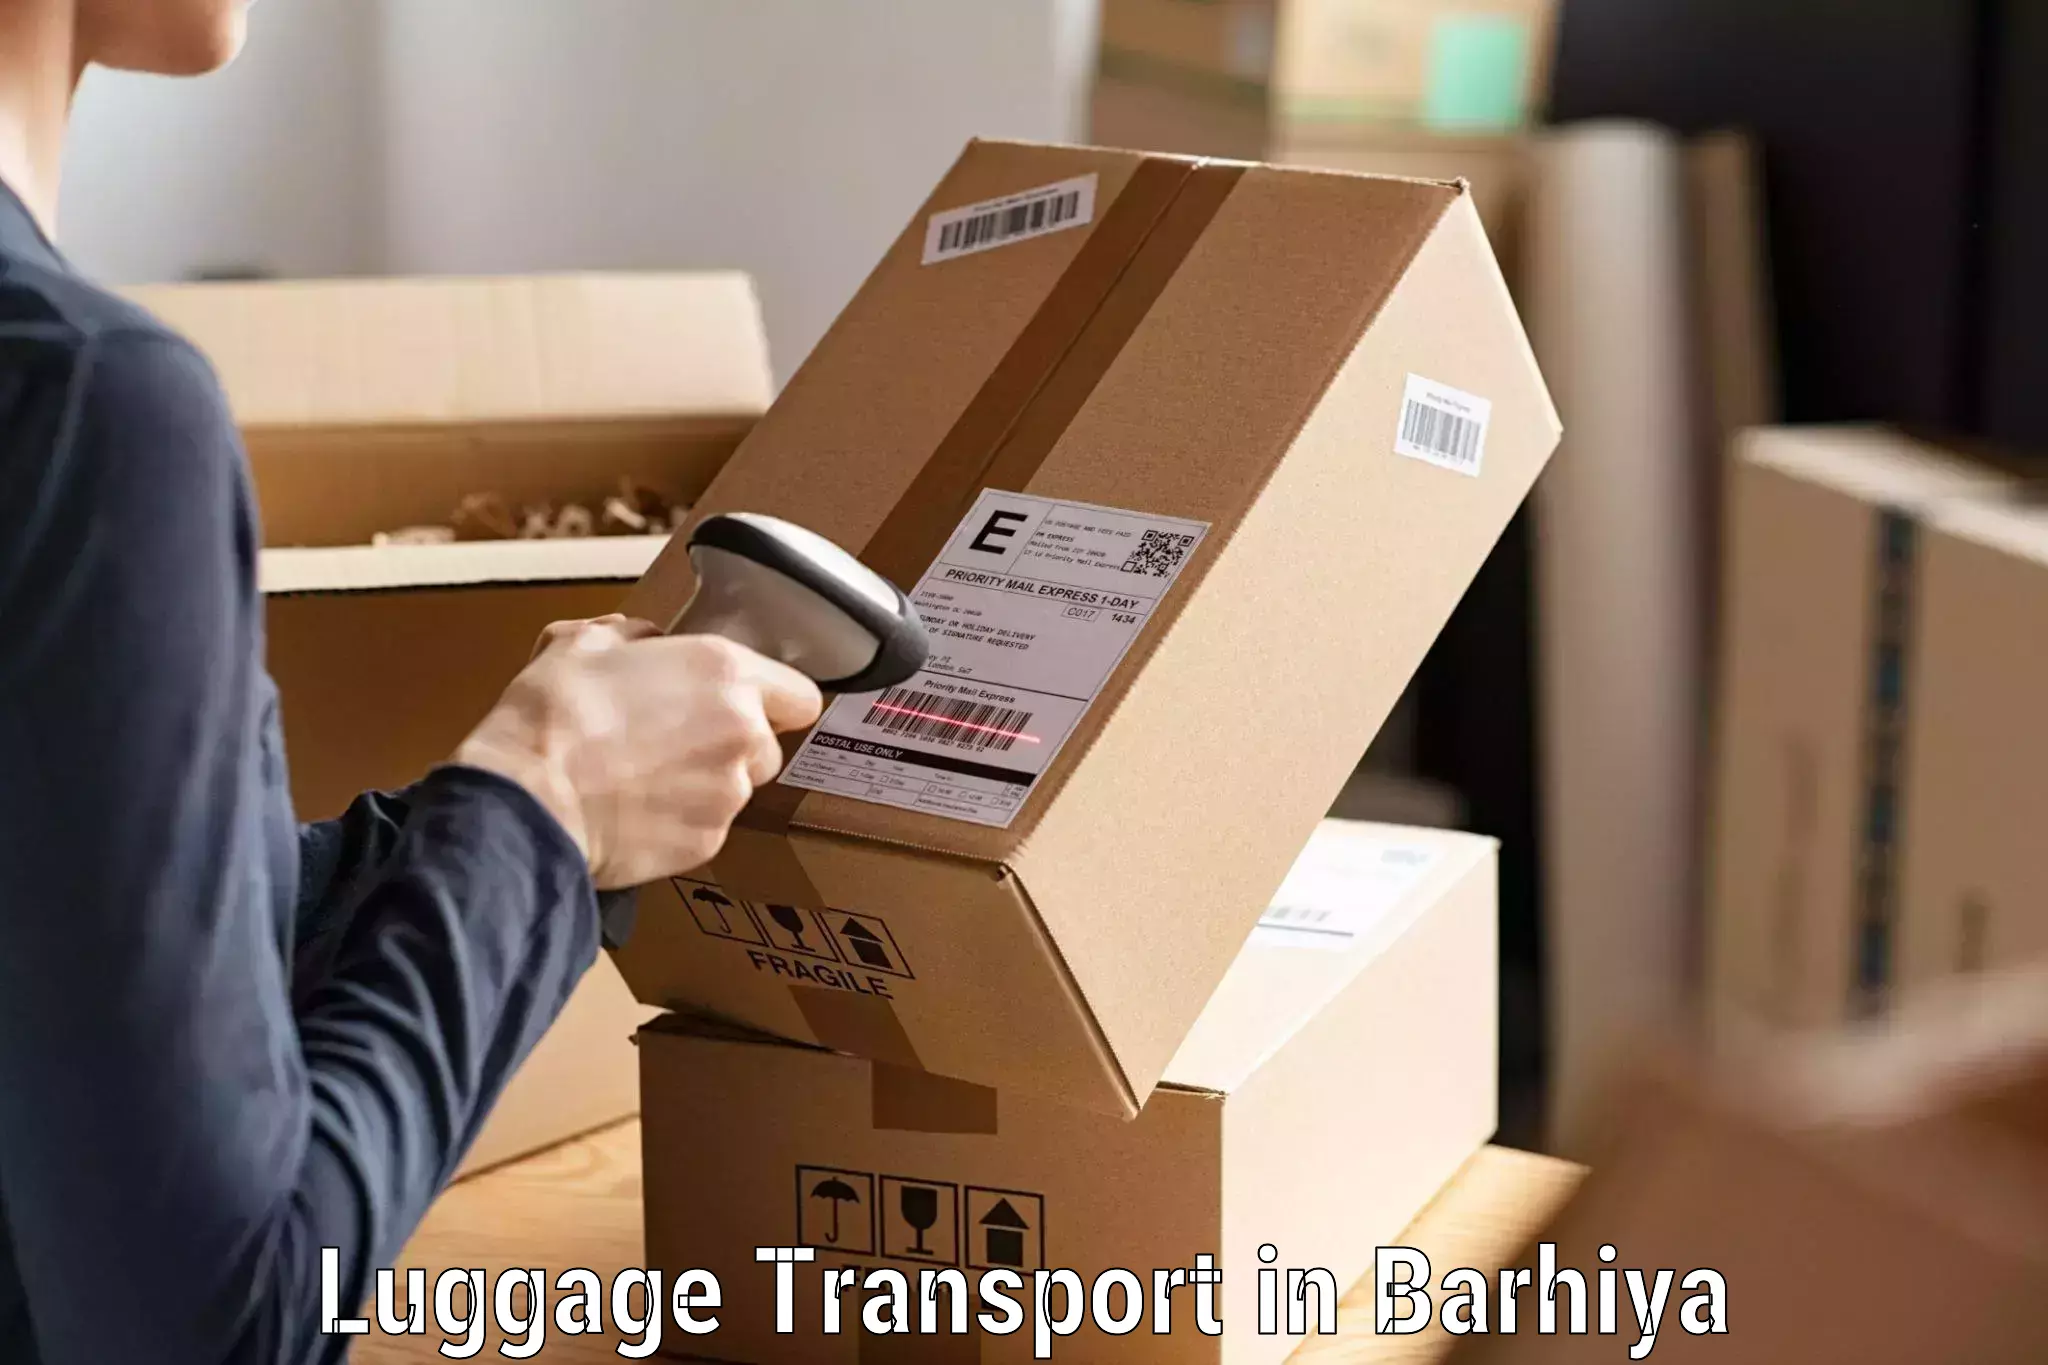 Luggage shipment processing in Barhiya